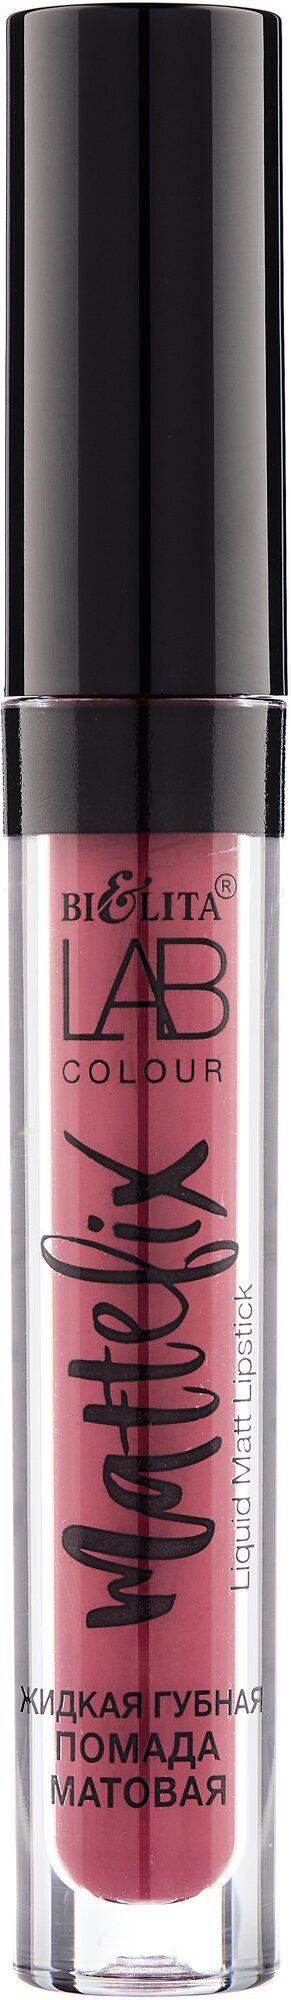 Bielita LAB colour жидкая губная помада MATTEFIX, оттенок 308 rock star